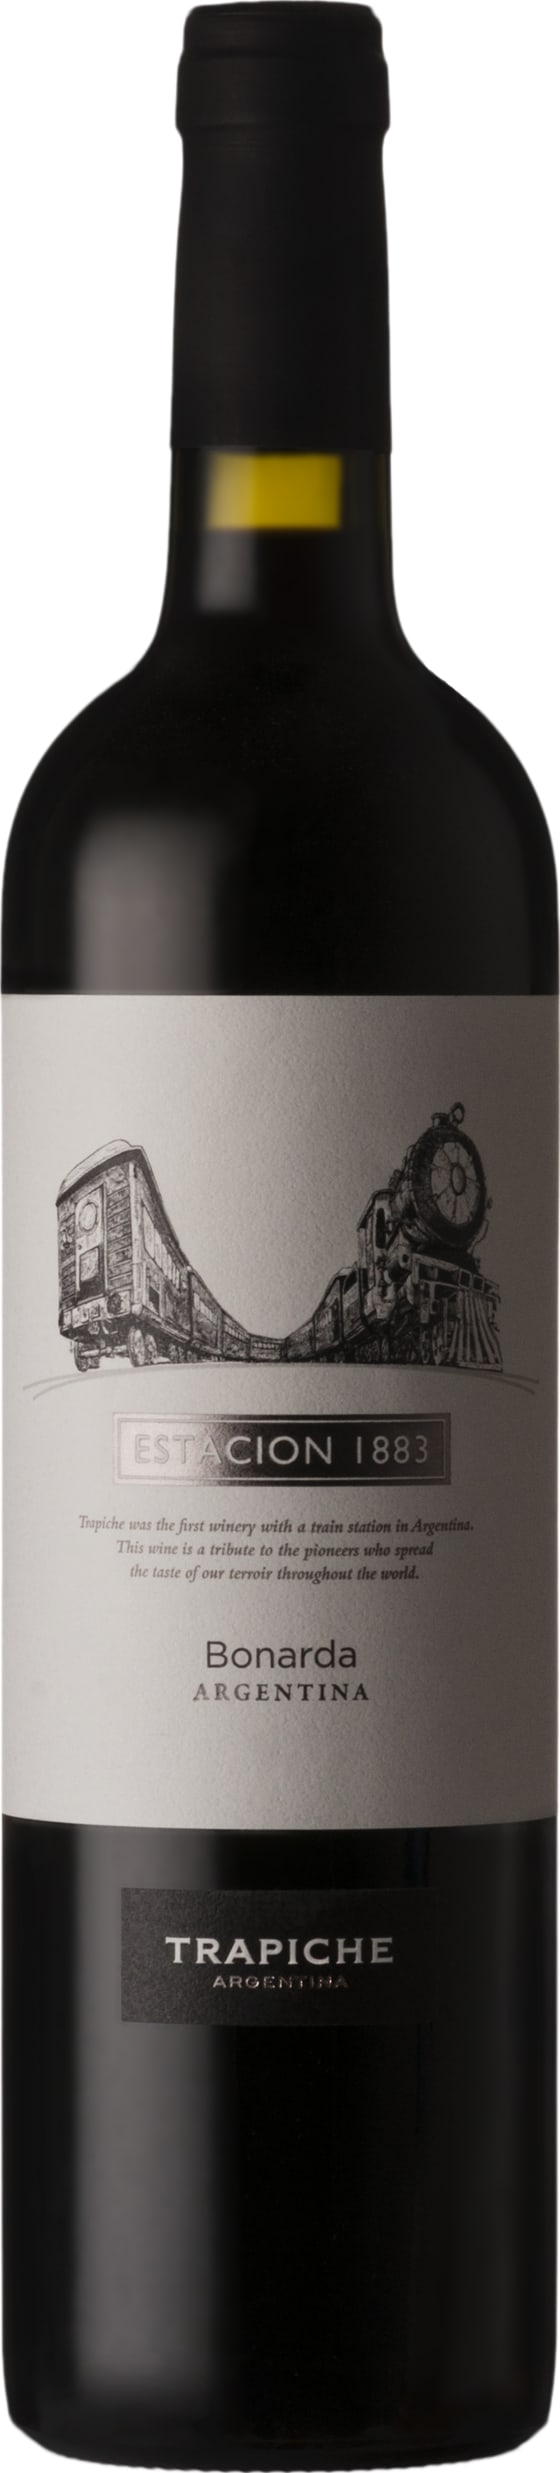 Trapiche Estacion 1883 Bonarda 2021 75cl - Buy Trapiche Wines from GREAT WINES DIRECT wine shop